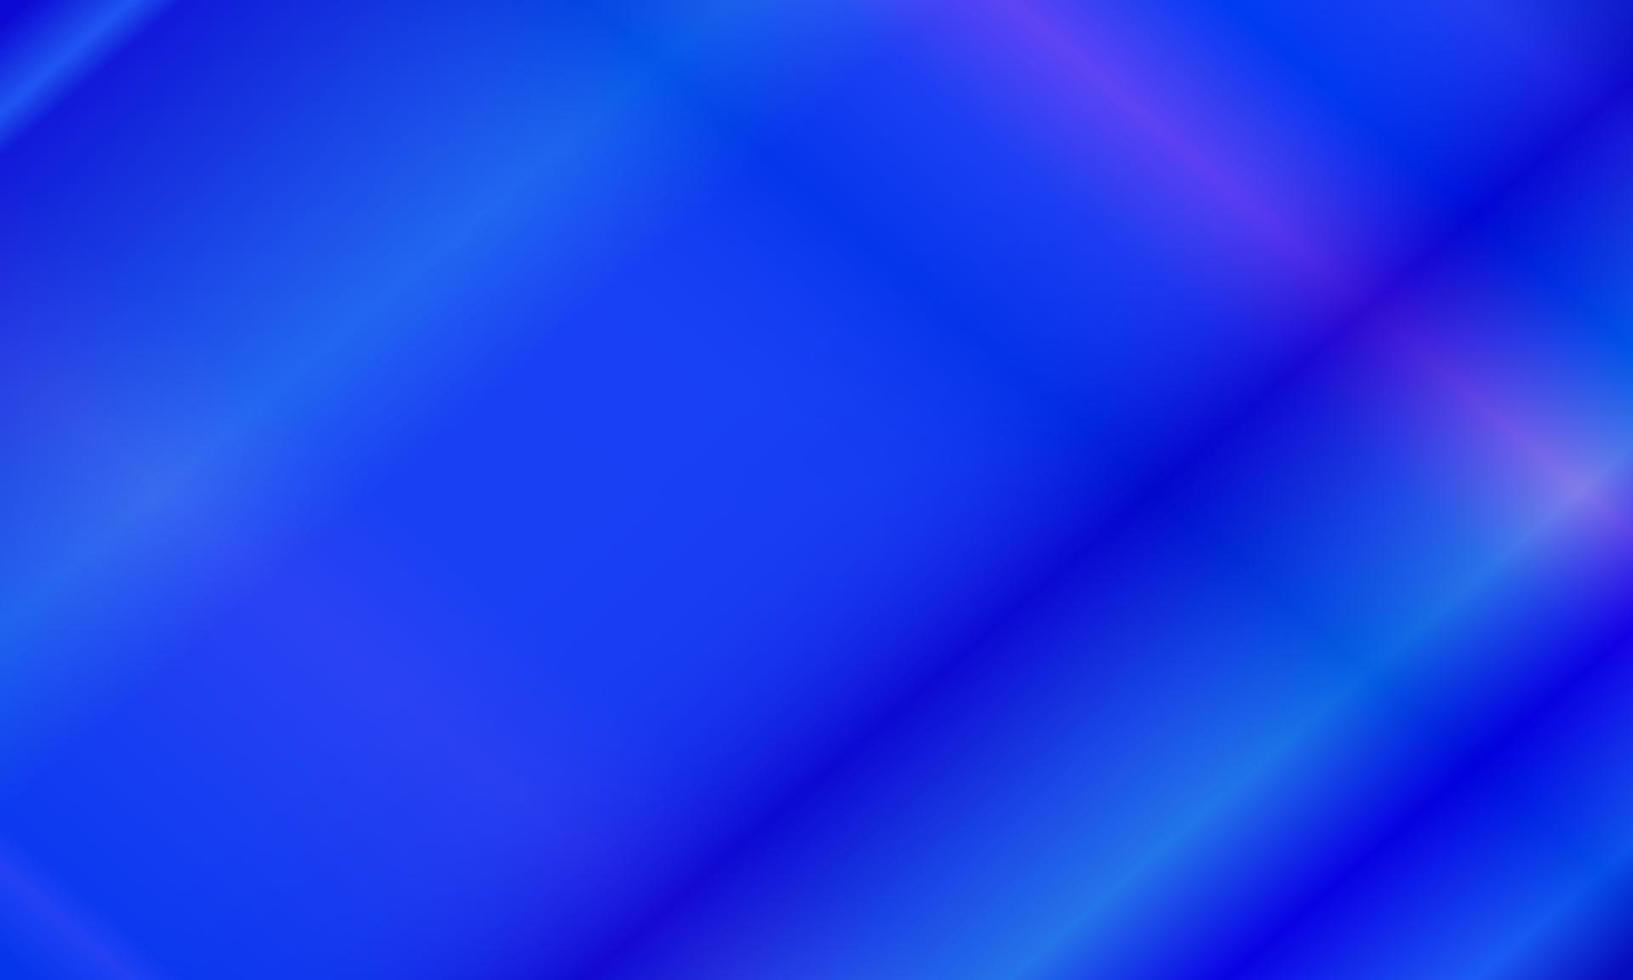 azul e azul pastel abstrato com padrão de luz neon. estilo brilhante, gradiente, borrão, moderno e colorido. ótimo para plano de fundo, pano de fundo, papel de parede, capa, pôster, banner ou panfleto vetor